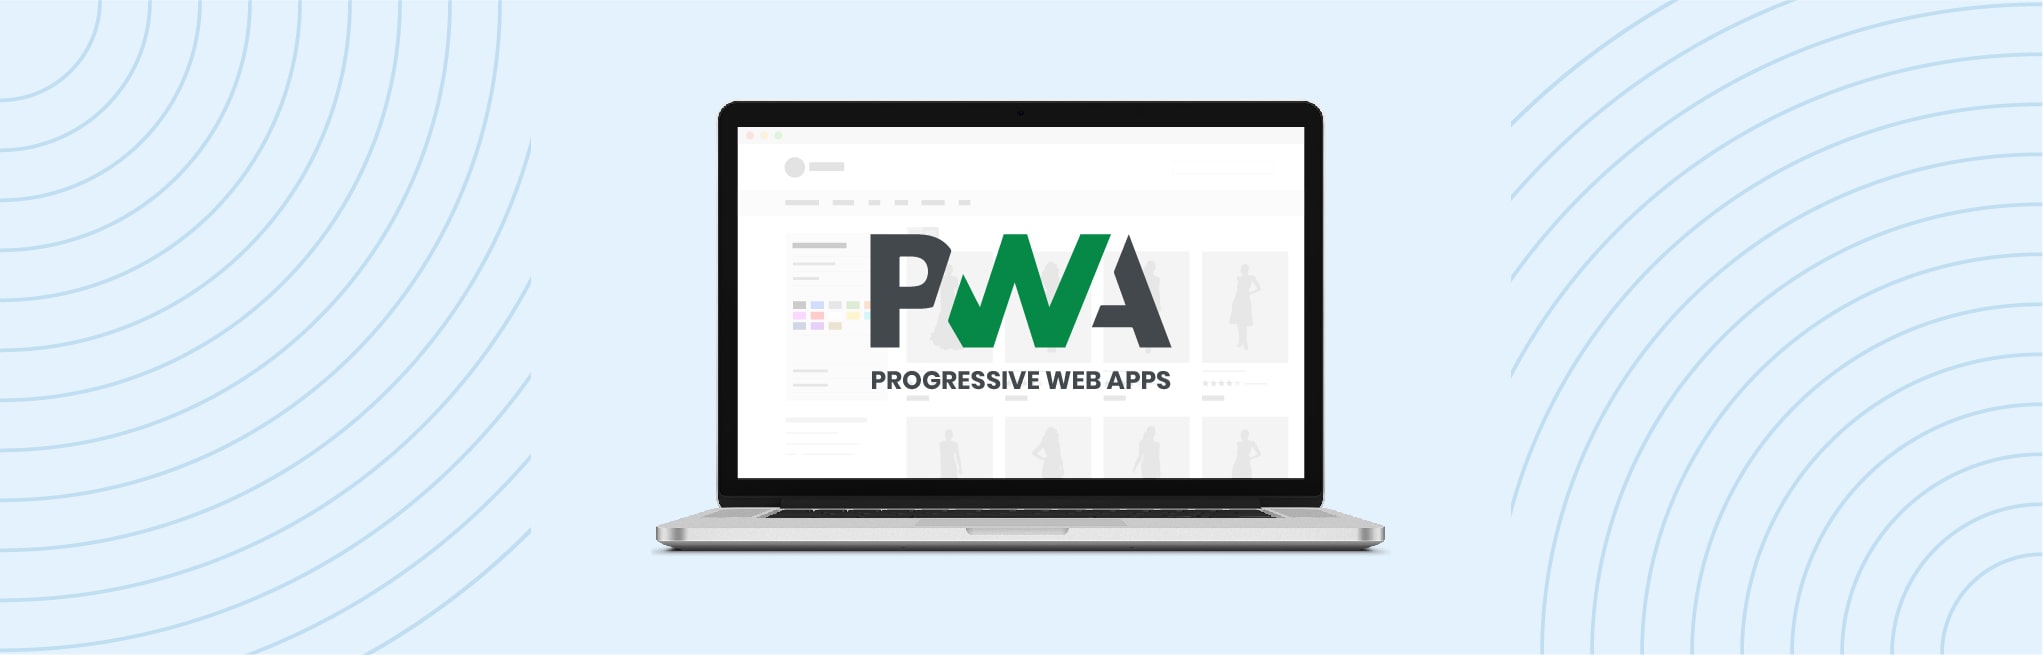 banner-Progressive-Web-Apps-The-future-of-the-Mobile-Web